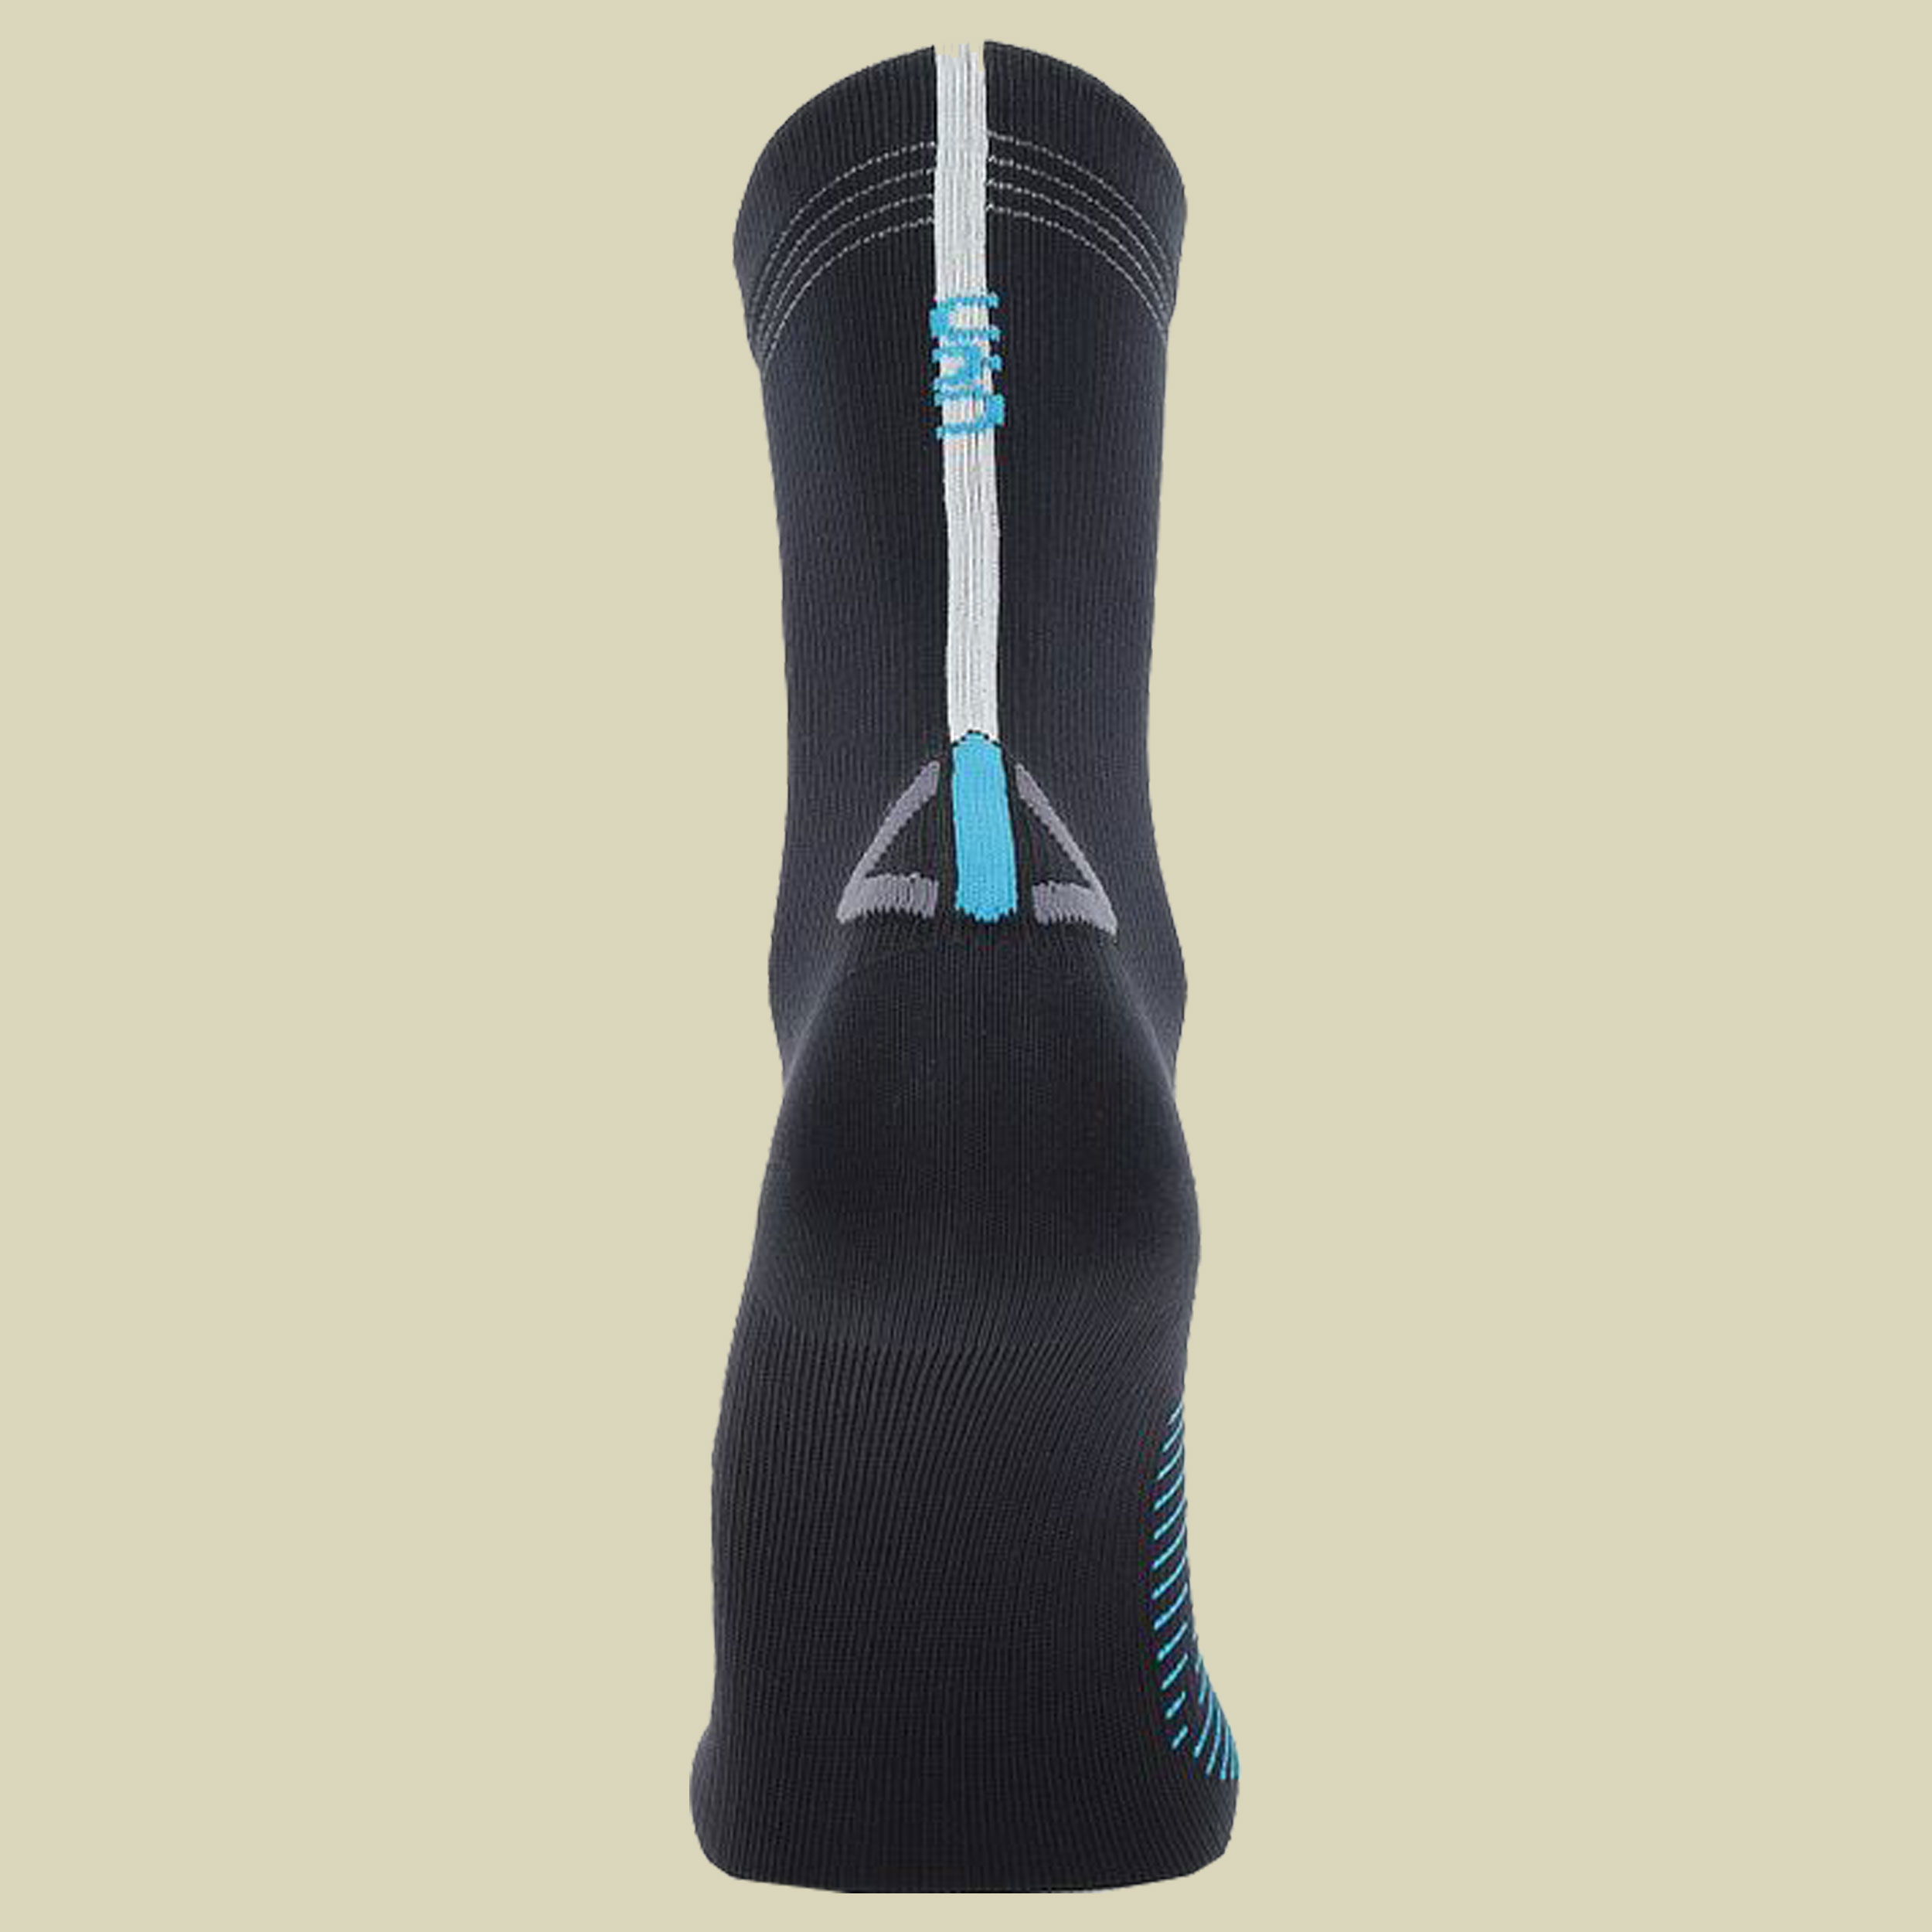 Waterproof Socks Größe 39-41 Farbe black / turquoise